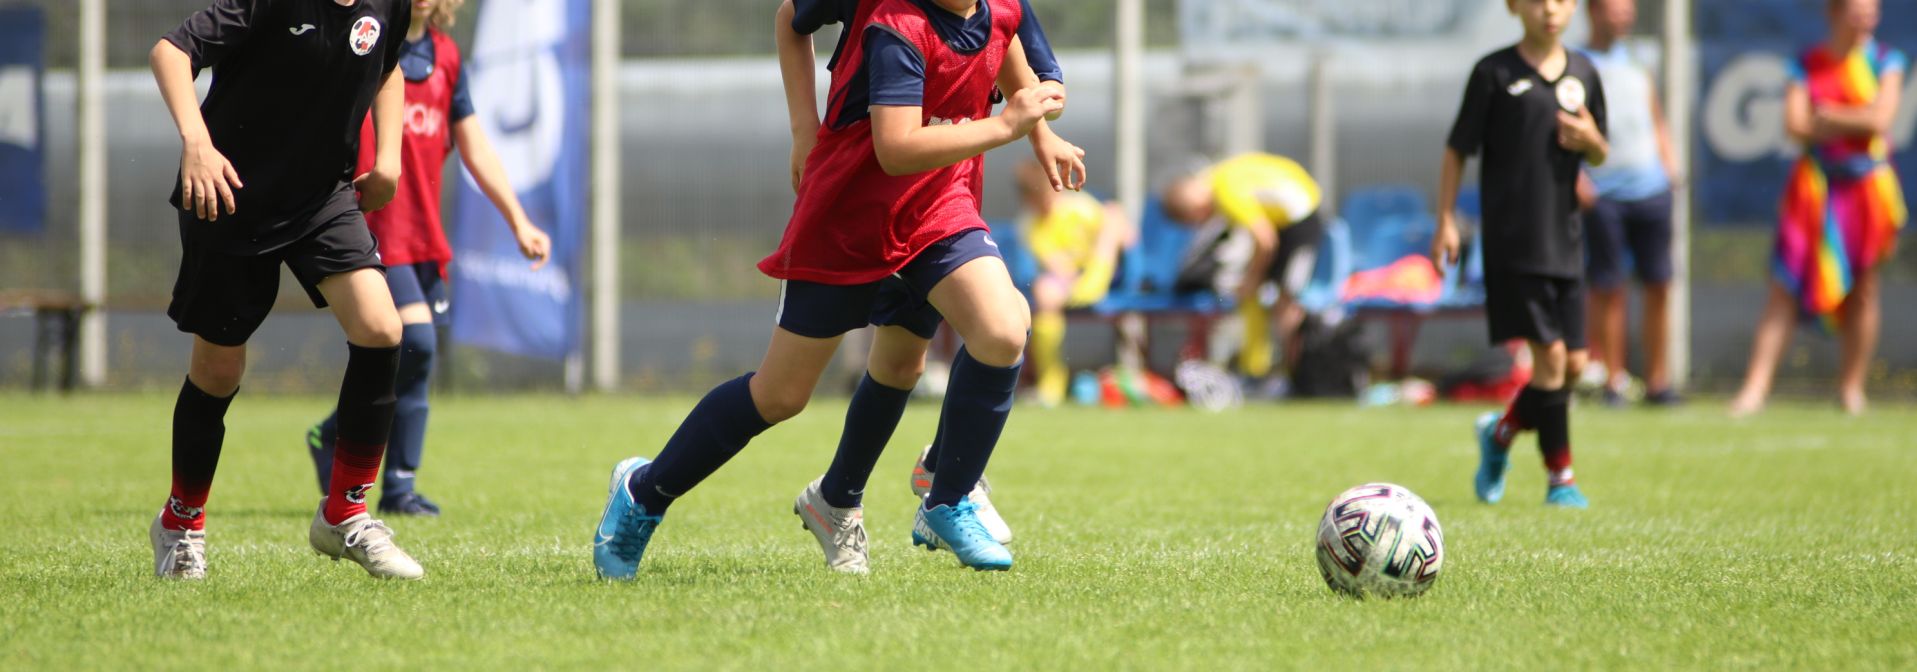 Młodzi piłkarze grający w piłkę nożną 